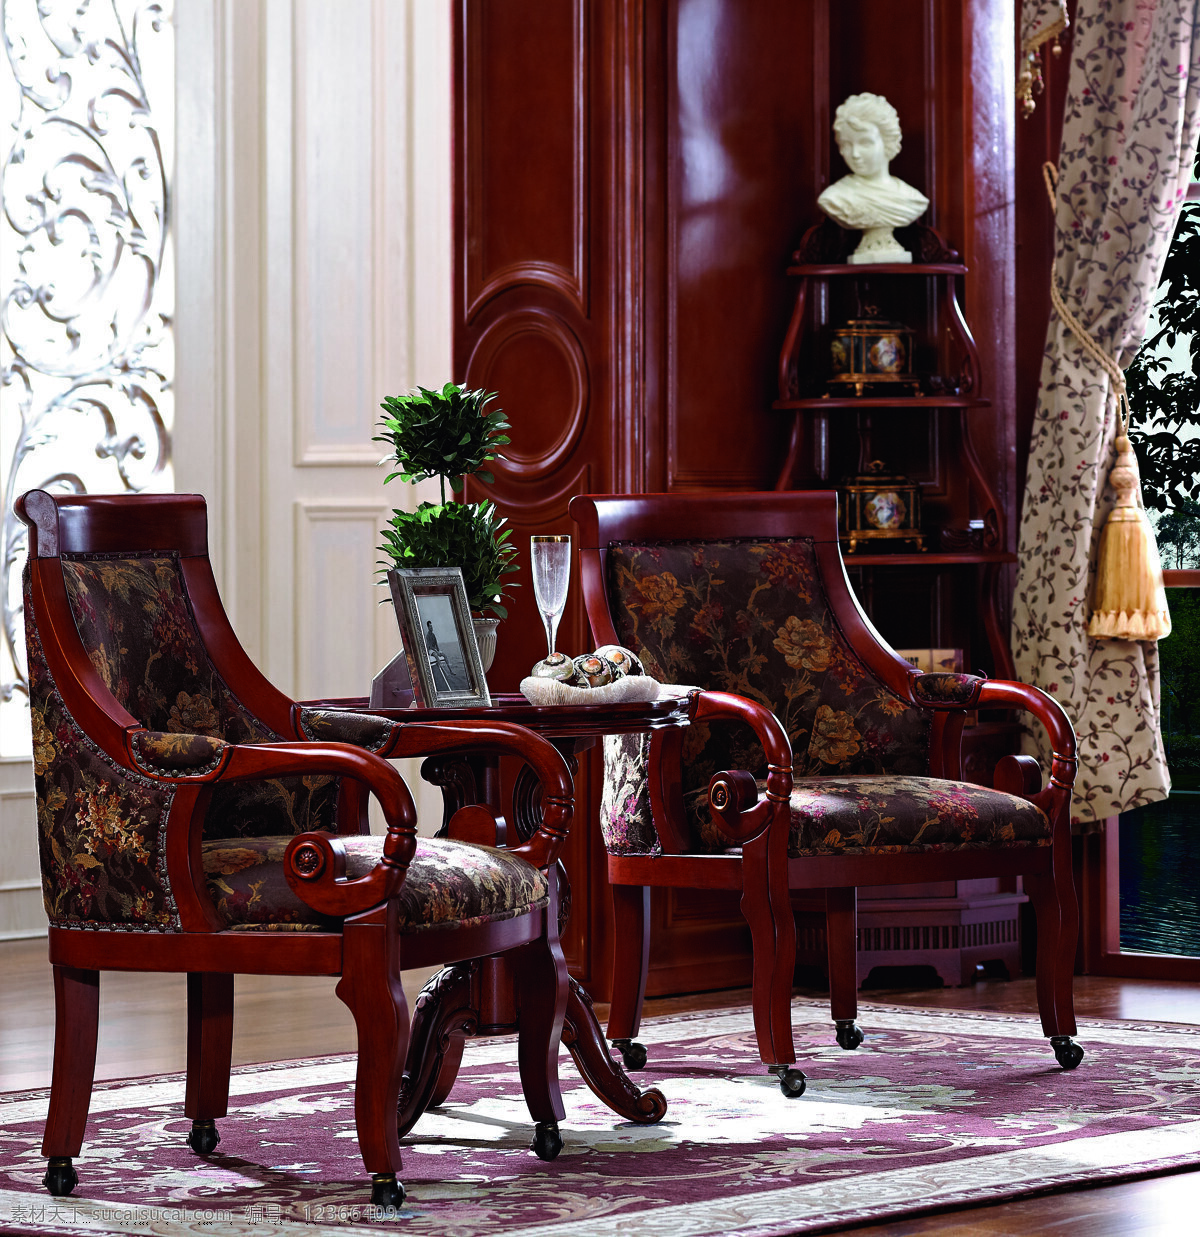 休闲椅 实木椅子 窗帘 花 欧式家具 欧式椅子 欧式 椅子 豪华 生活素材 生活百科 文化艺术